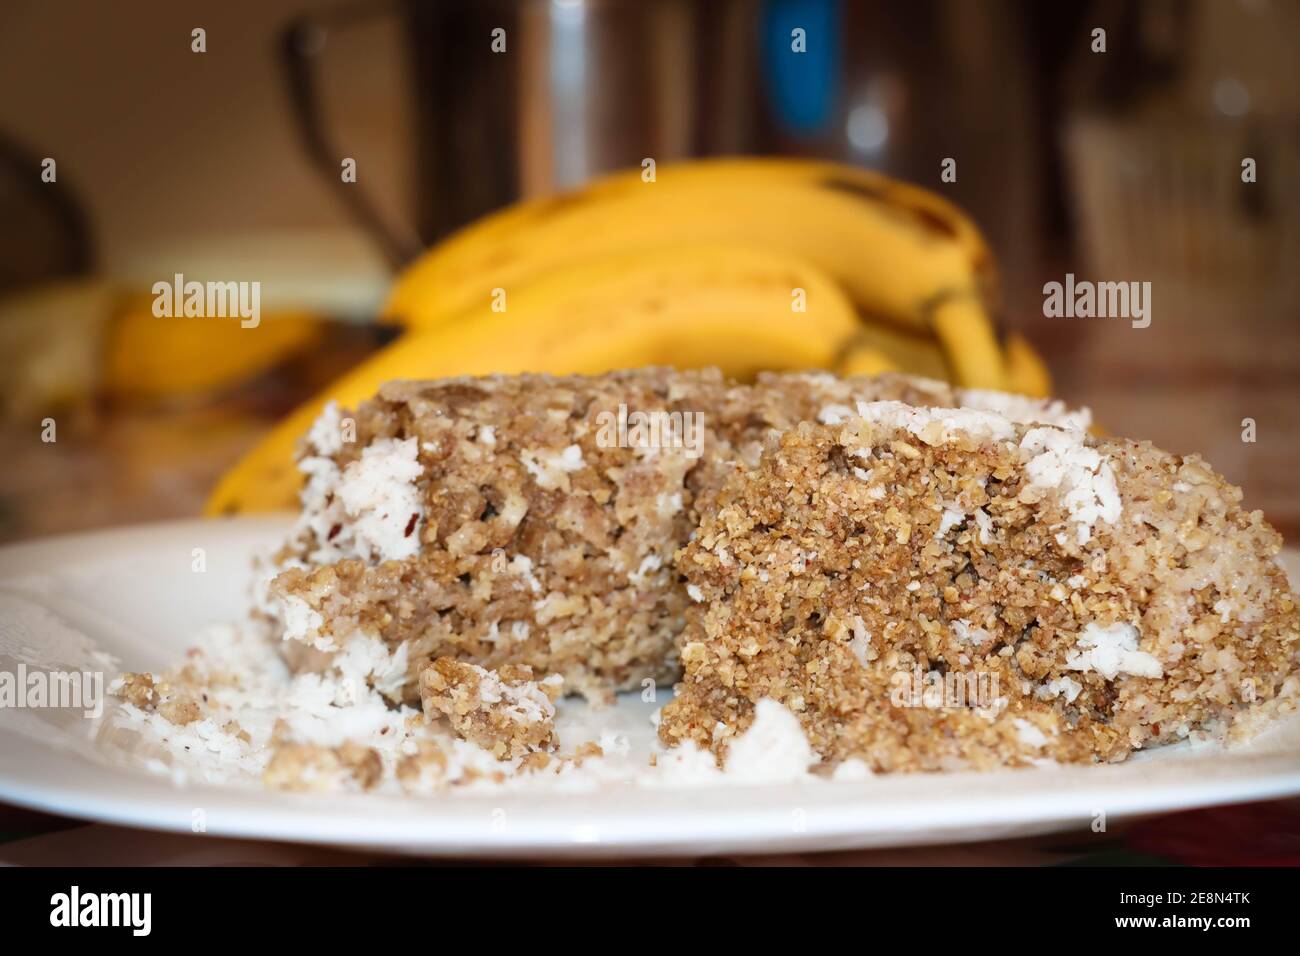 CLoseup Image Of Wheat Puttu With Bananas. Selective Focus Stock Photo